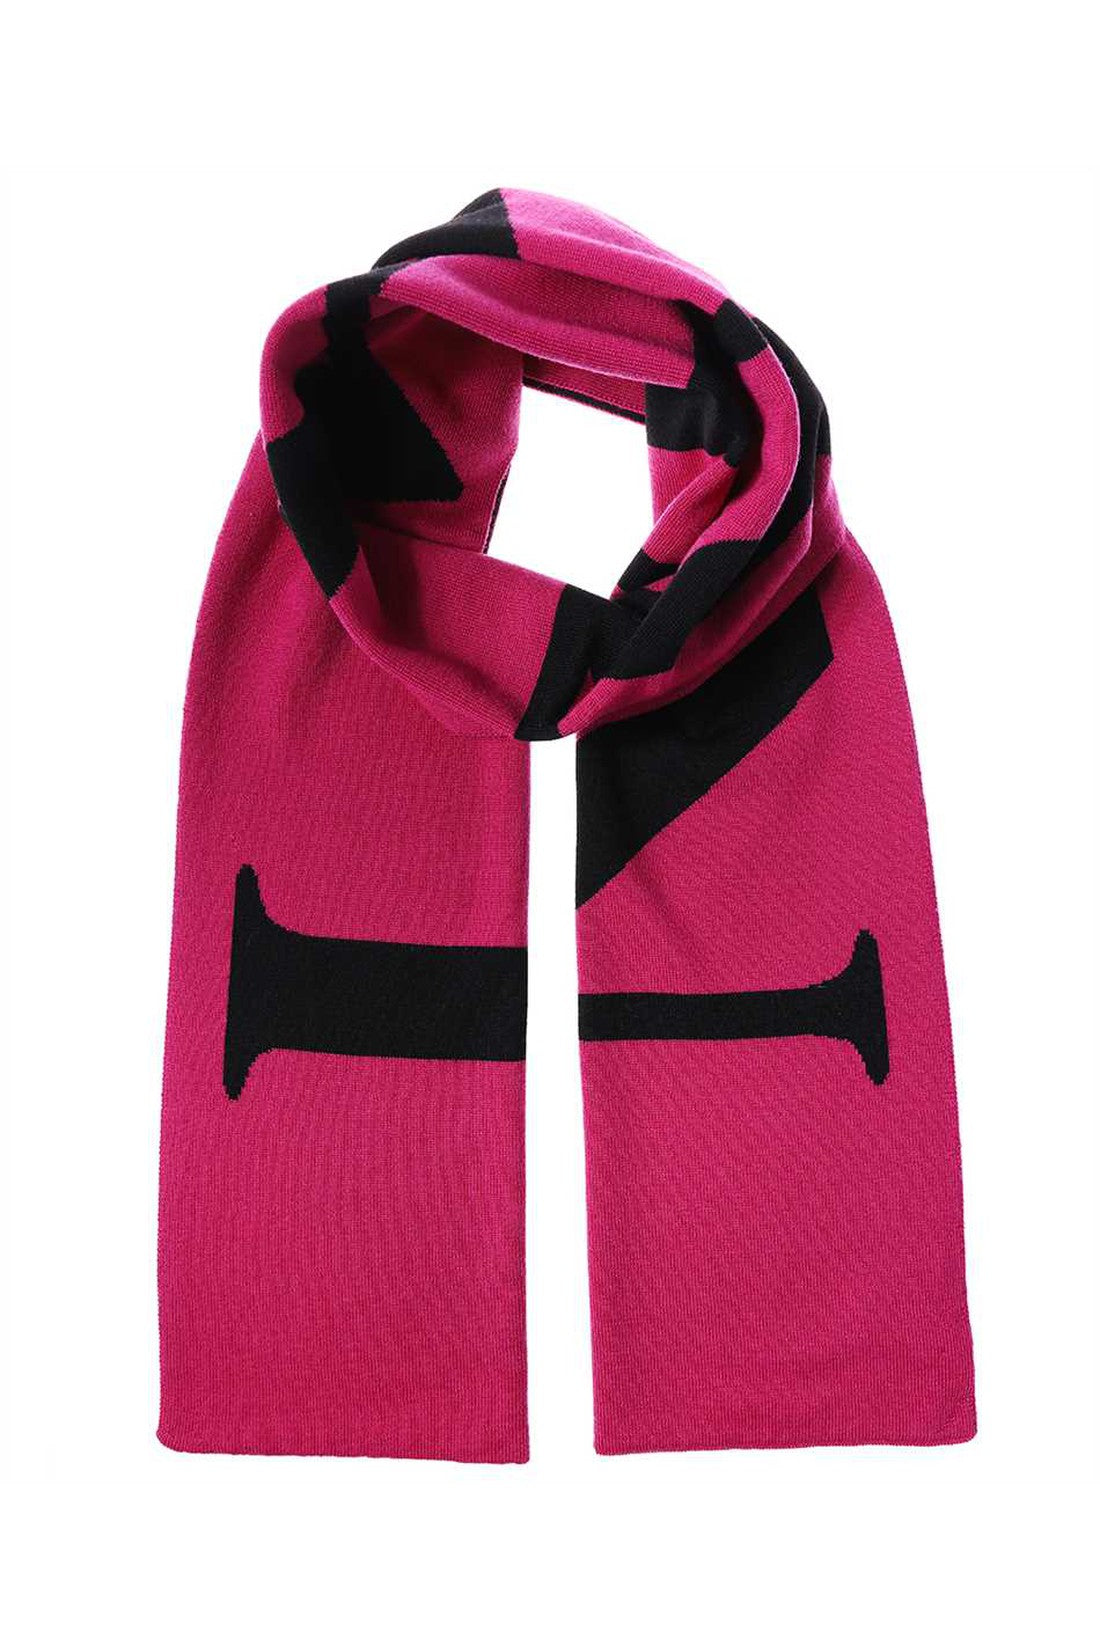 Wool scarf-Lanvin-OUTLET-SALE-TU-ARCHIVIST